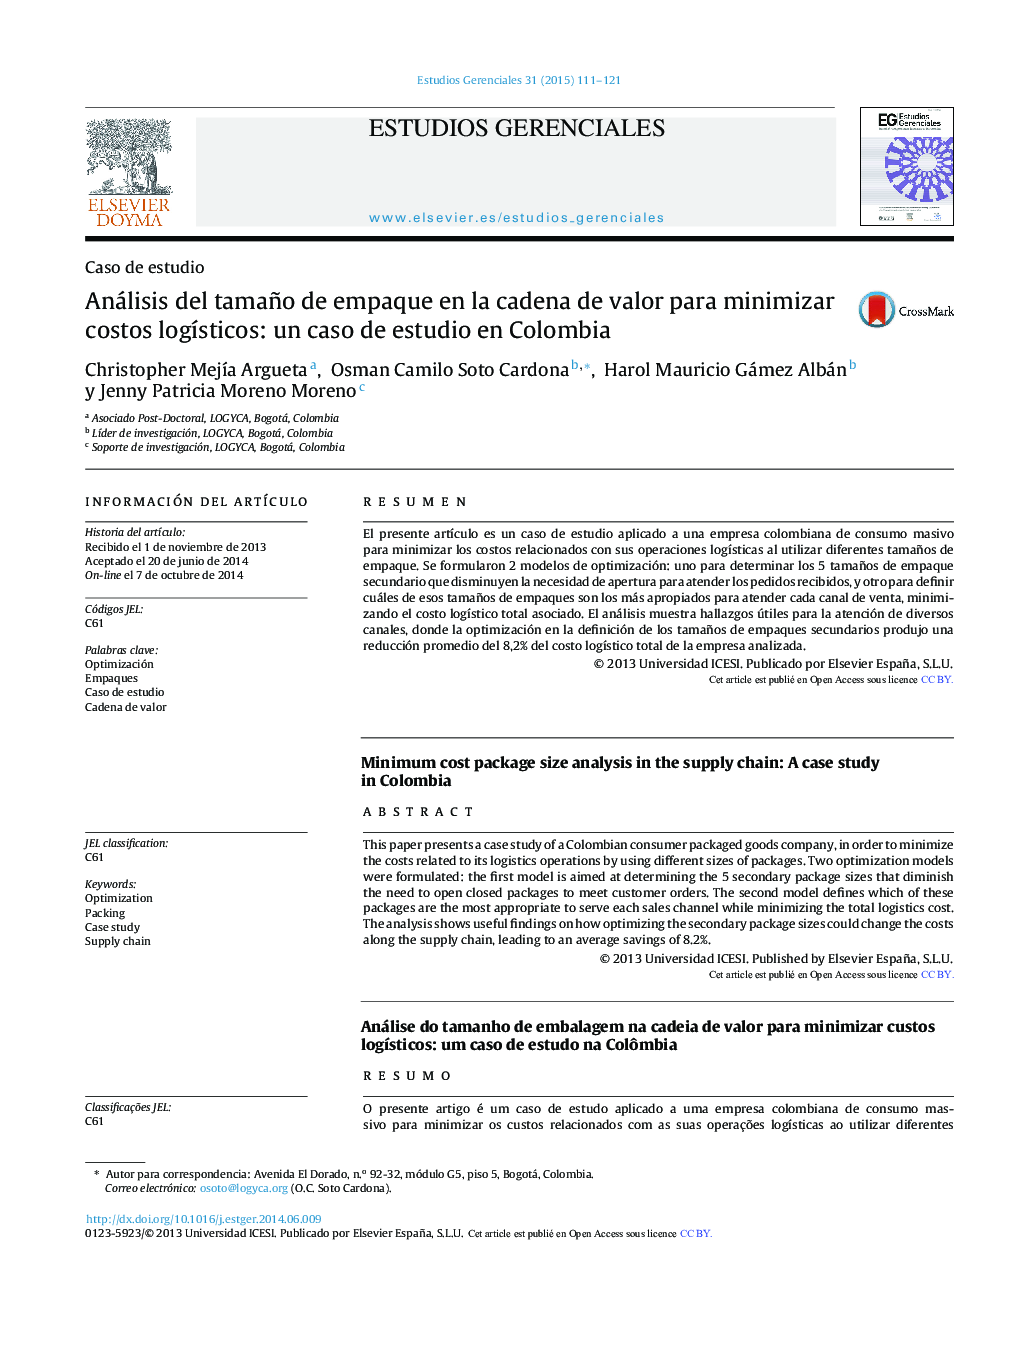 تجزیه و تحلیل اندازه + یا بسته بندی در زنجیره ارزش برای به حداقل رساندن هزینه های تدارکات: مطالعه موردی در کلمبیا 